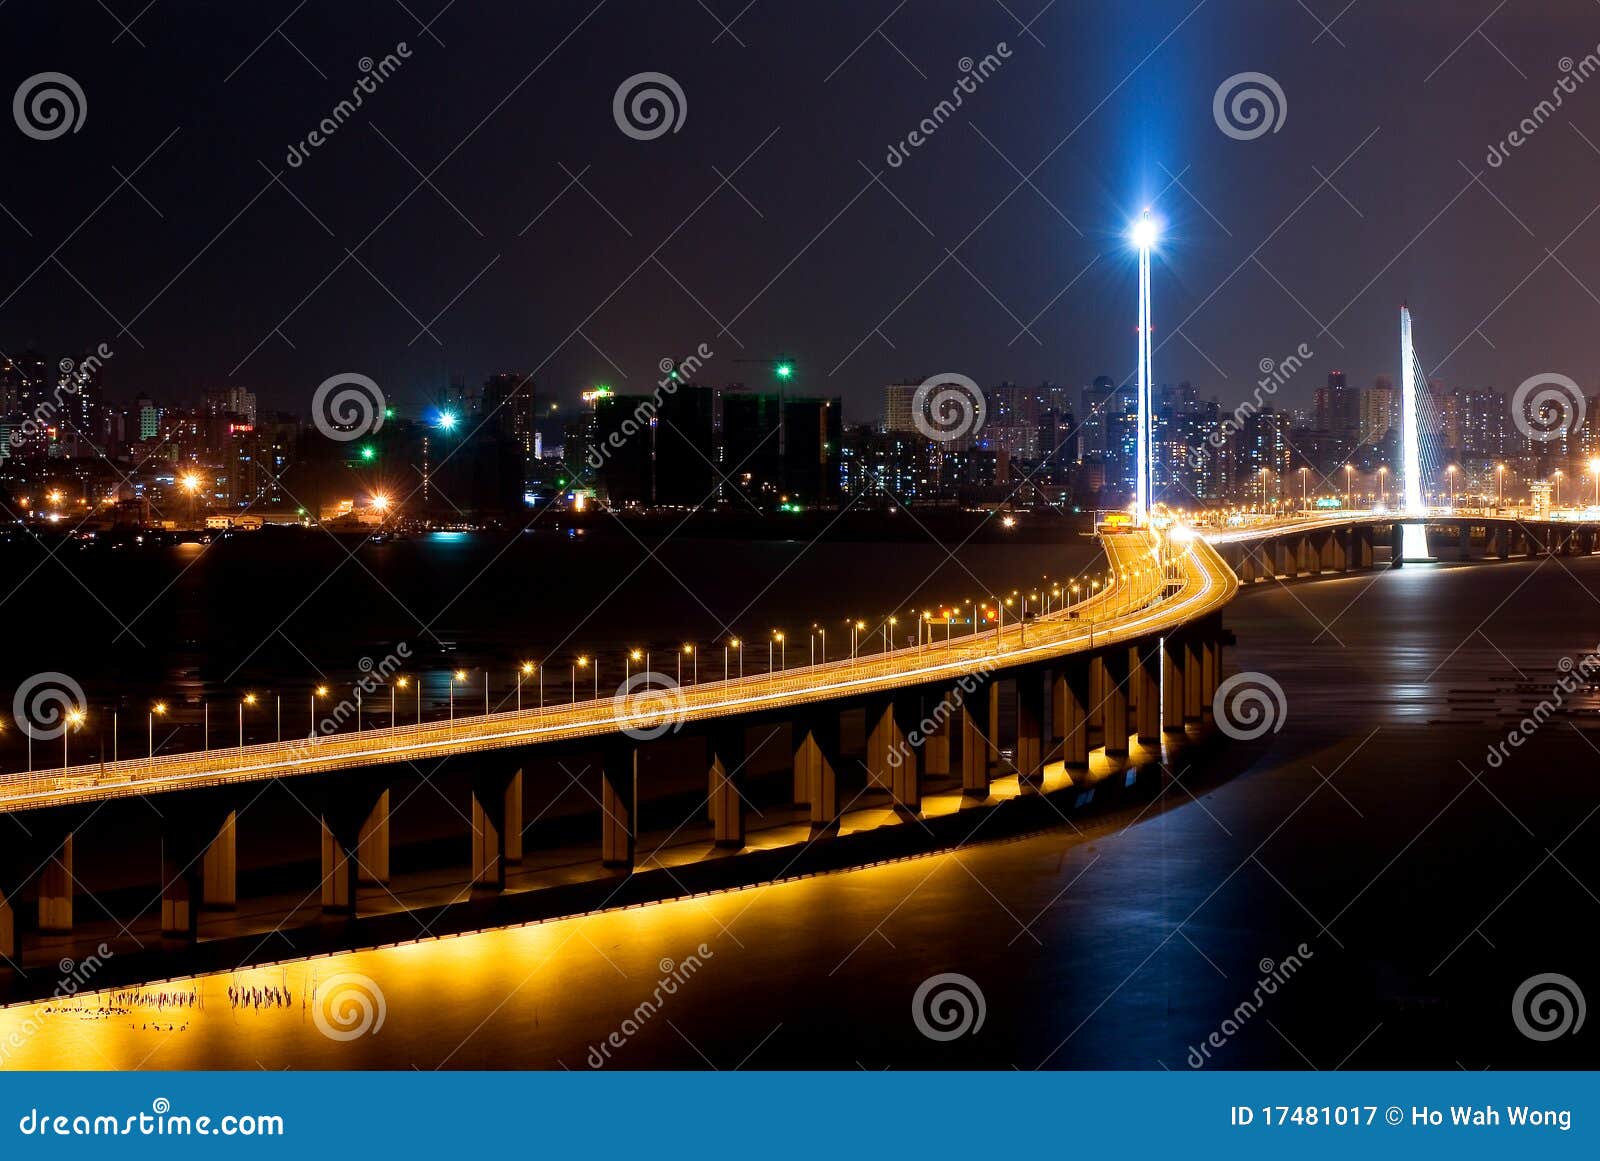 night scene of shenzhen bay bridge